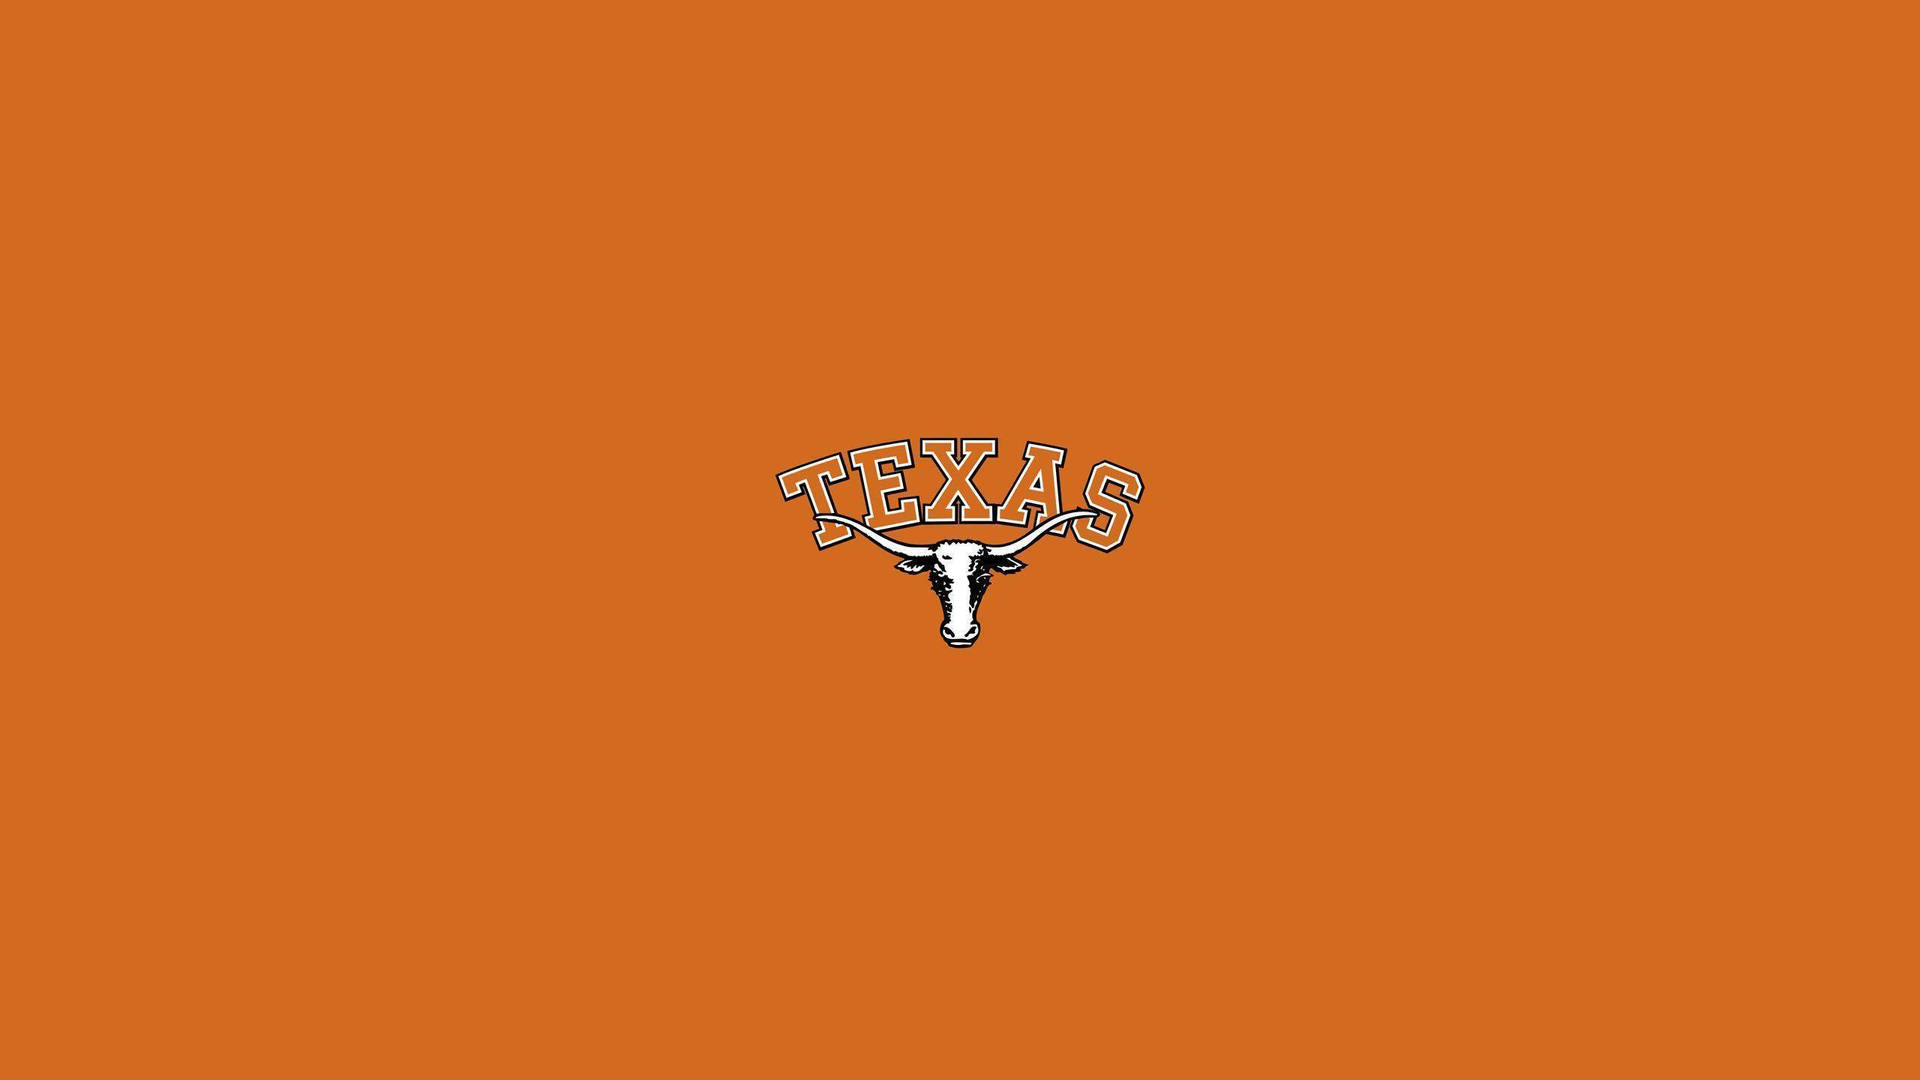 Enlogotyp Av Texas Rangers På En Orangefärgad Bakgrund. Wallpaper